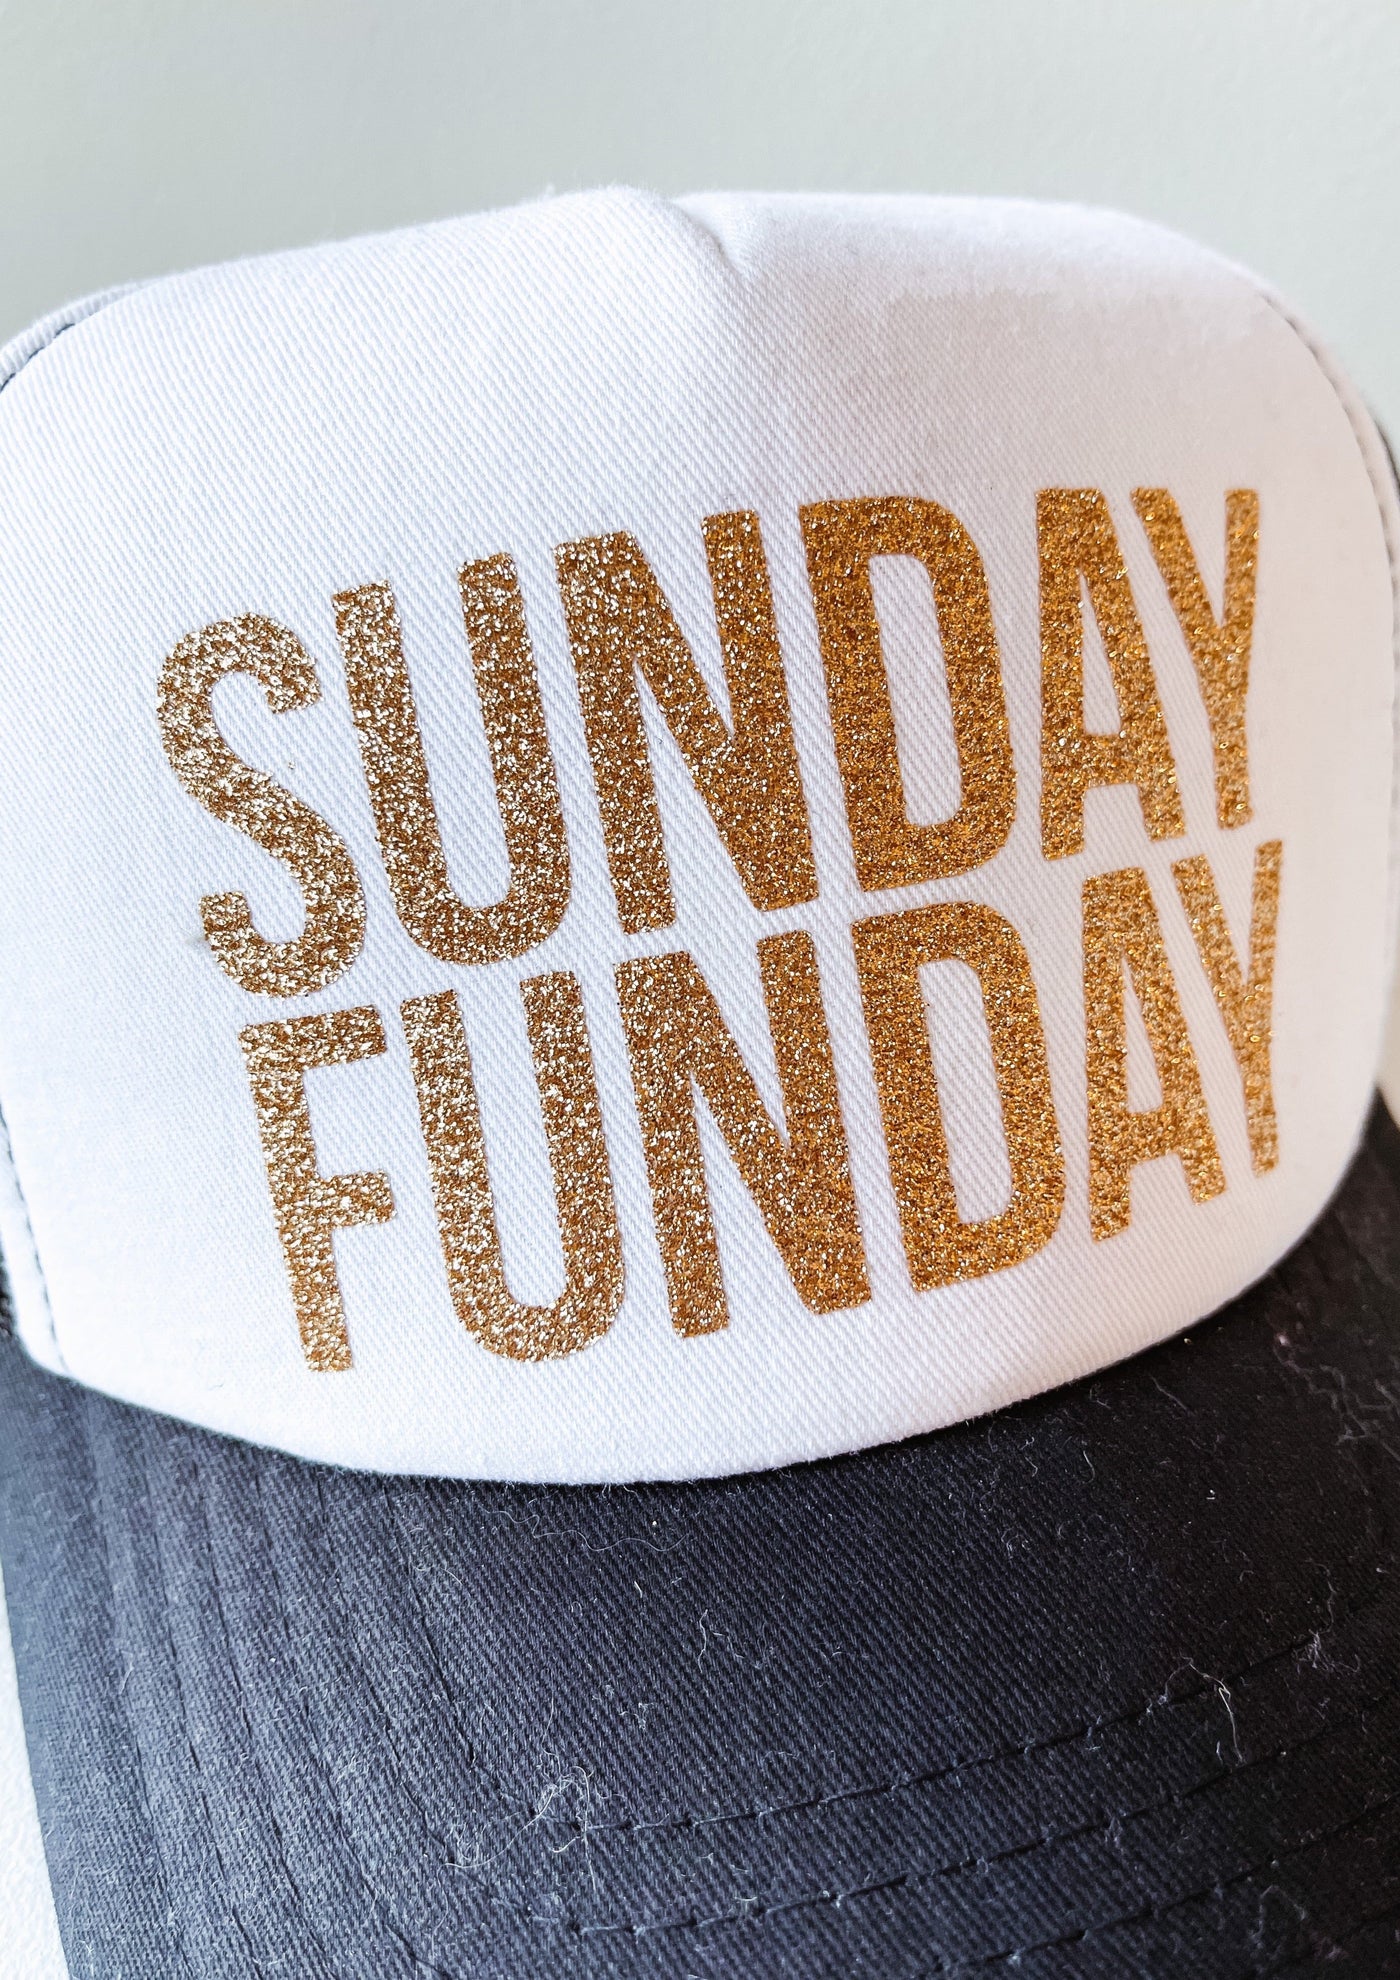 "Sunday Funday" Hat